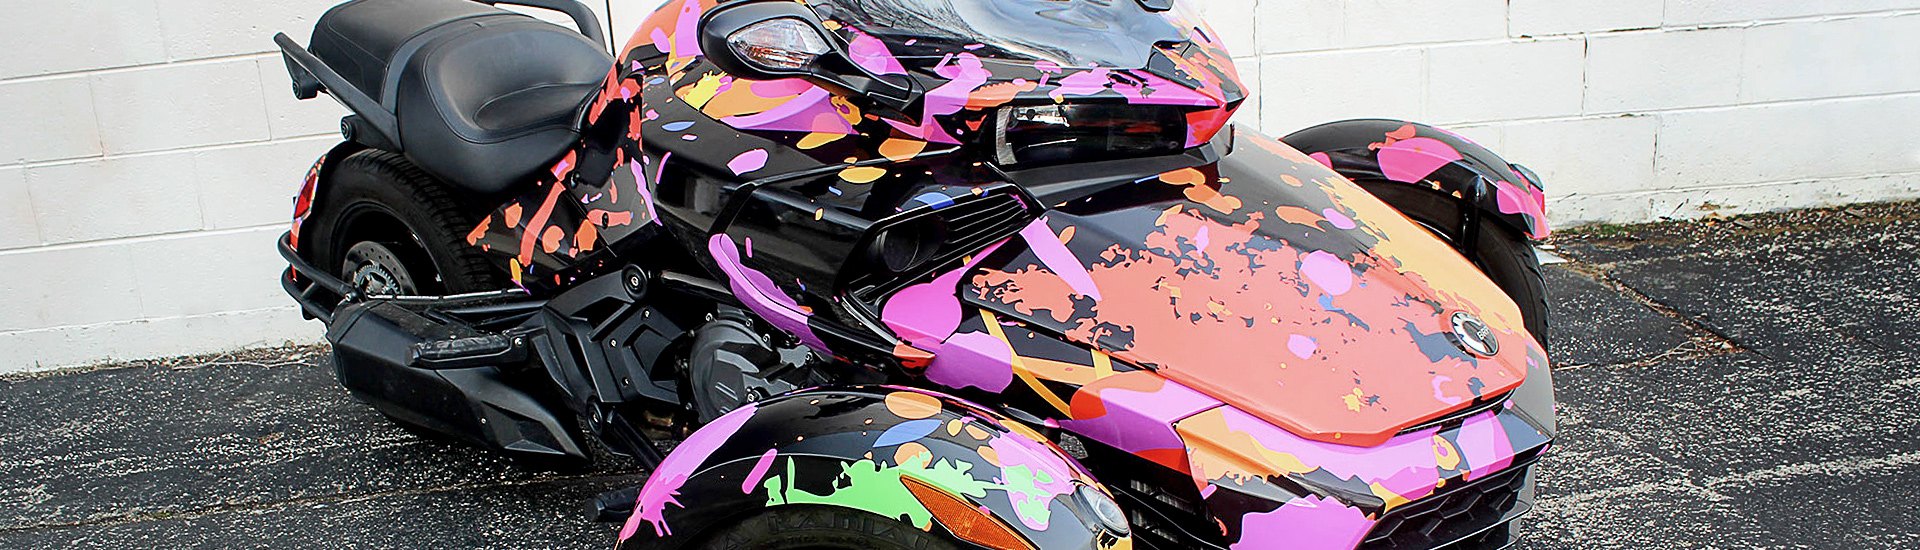 Motorcycle Graphics & Decals